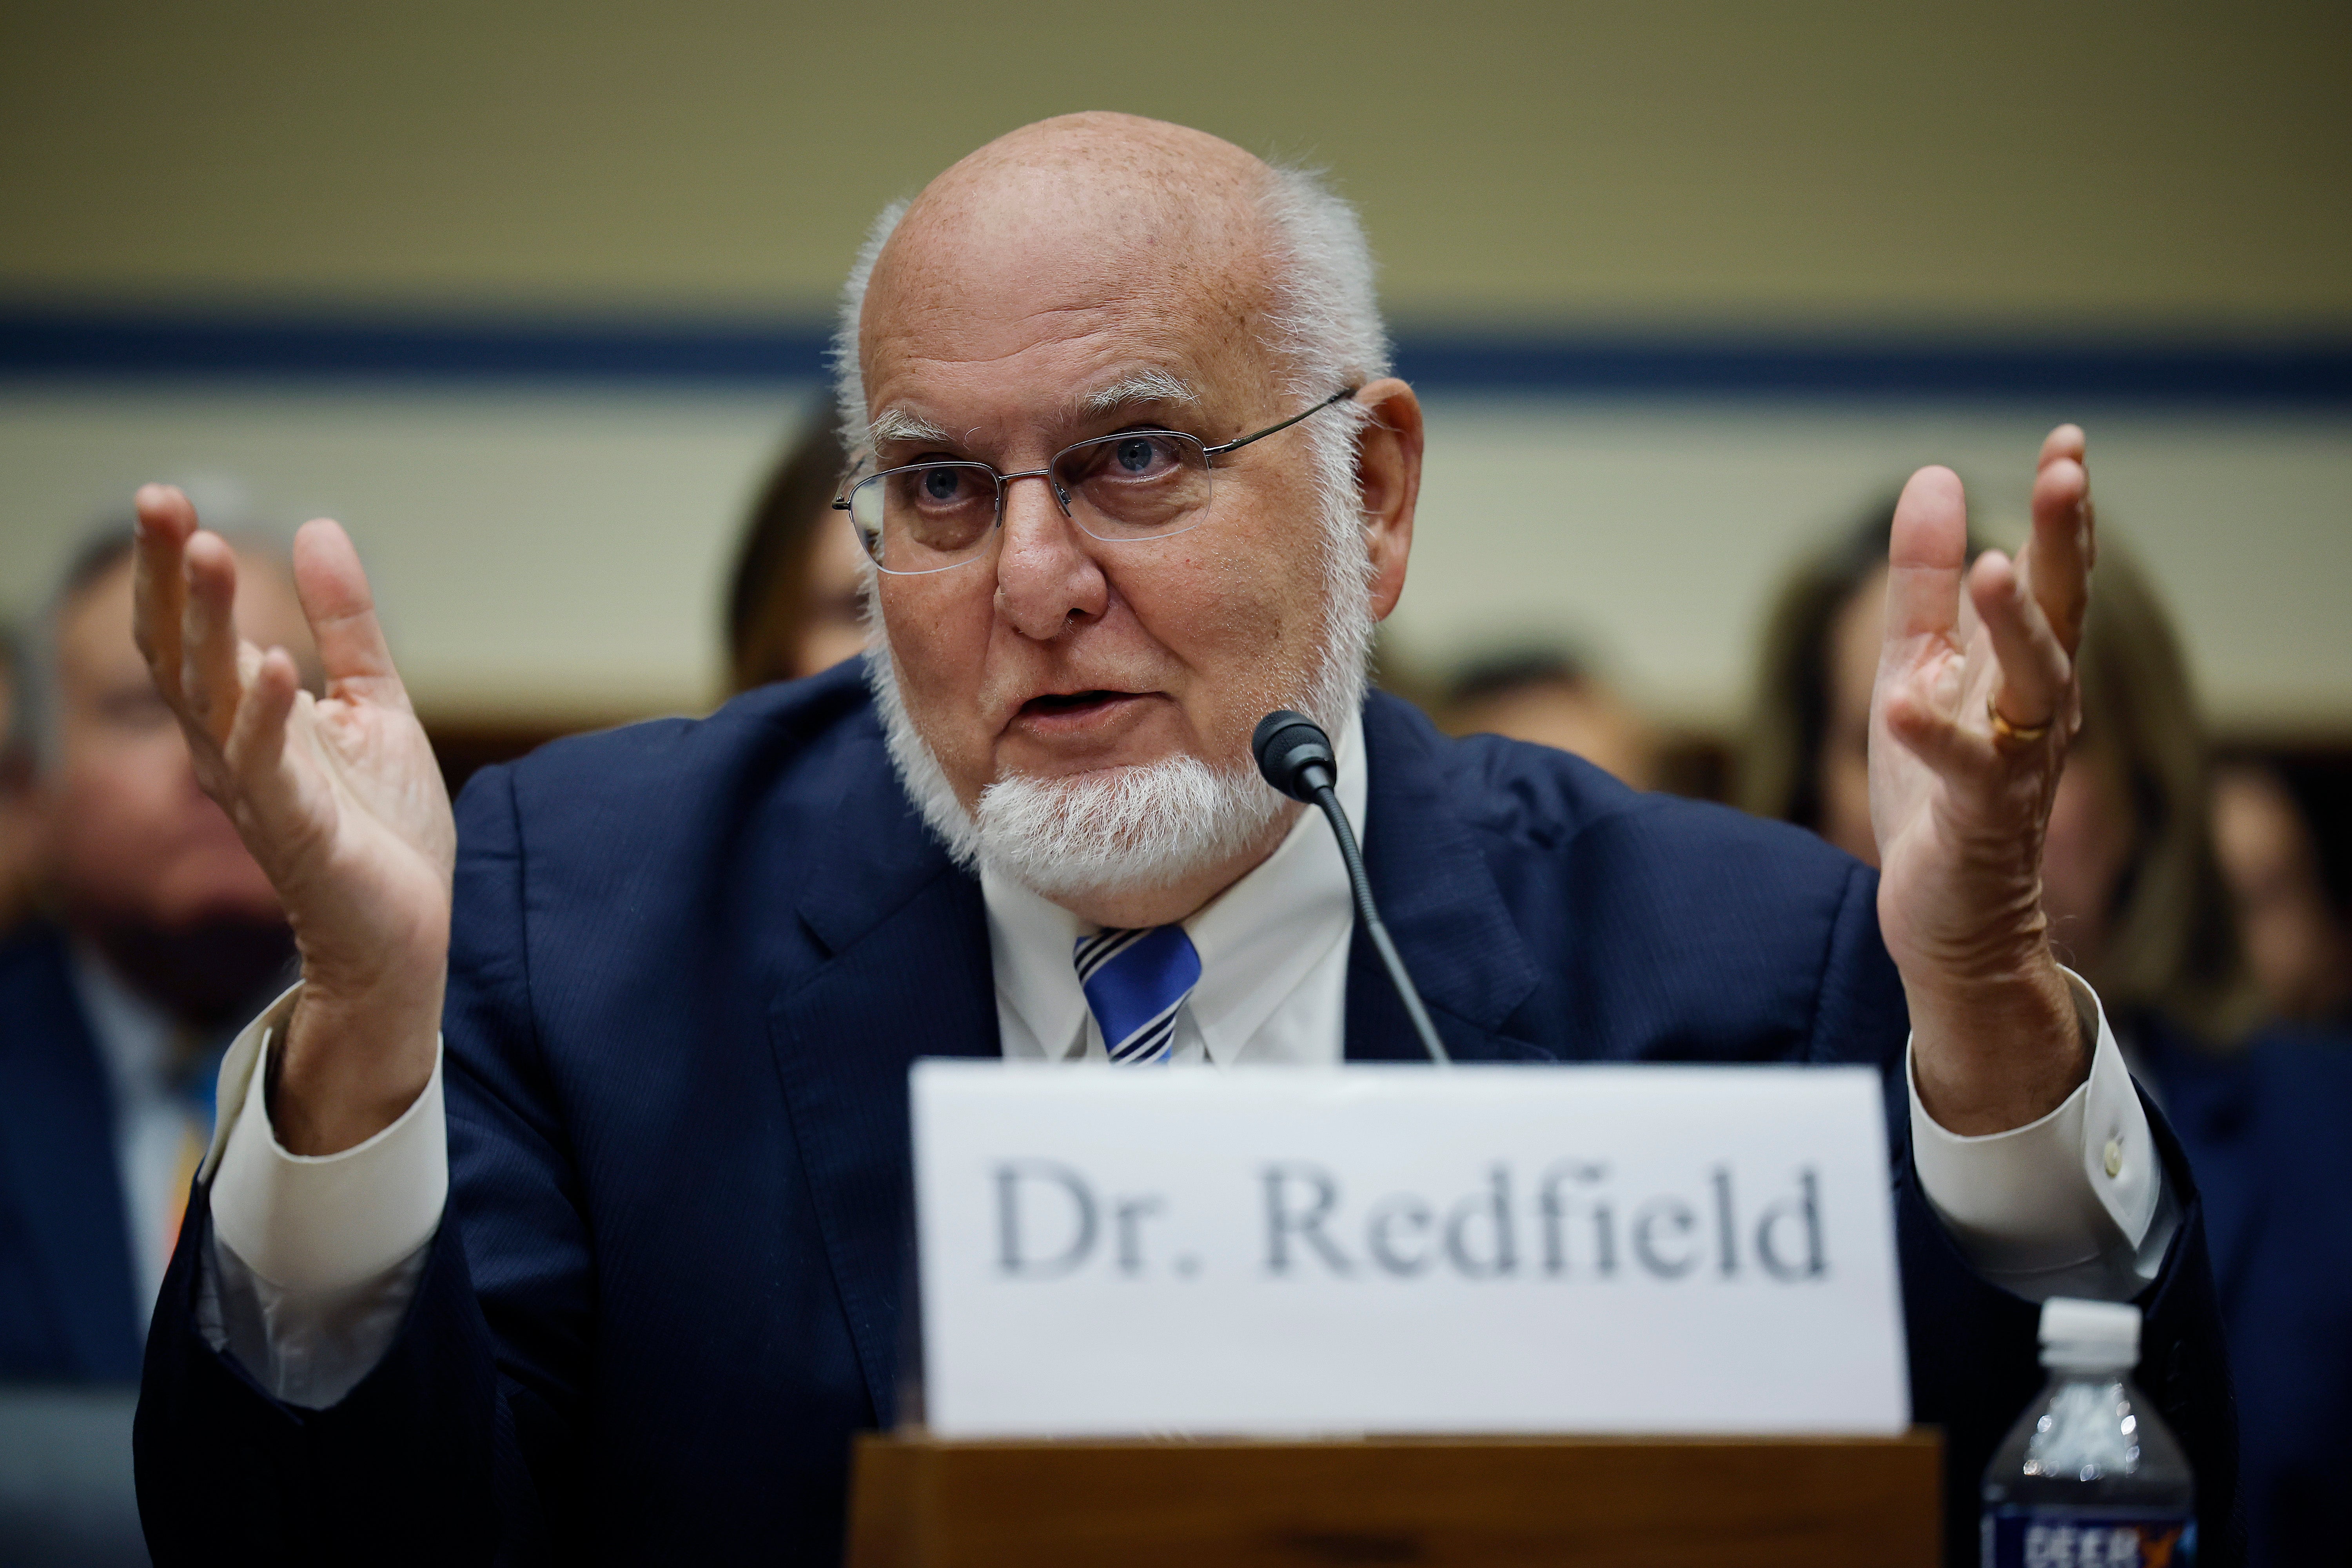 Il dottor Robert Redfield, ex direttore del CDC, ha suggerito che la prossima pandemia potrebbe derivare dall'influenza aviaria.